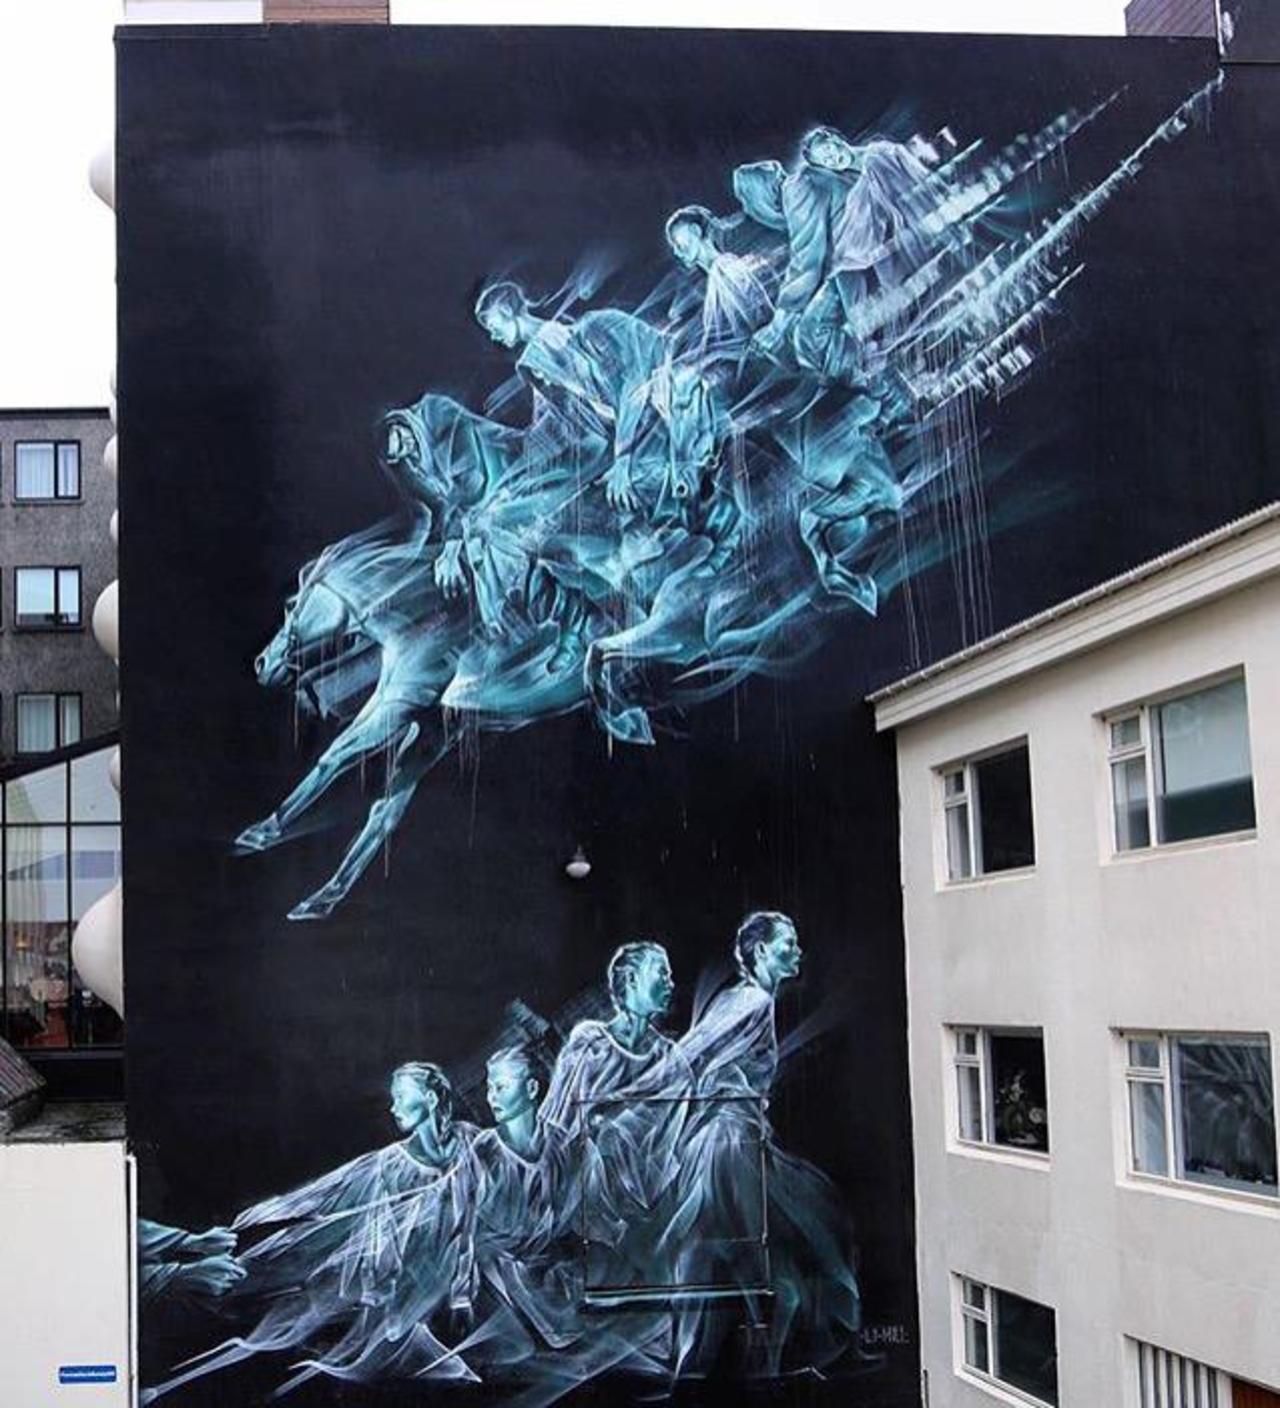 Street Art by li hill in Reykjavik 

#art #graffiti #mural #streetart http://t.co/MZoFgYN4GD